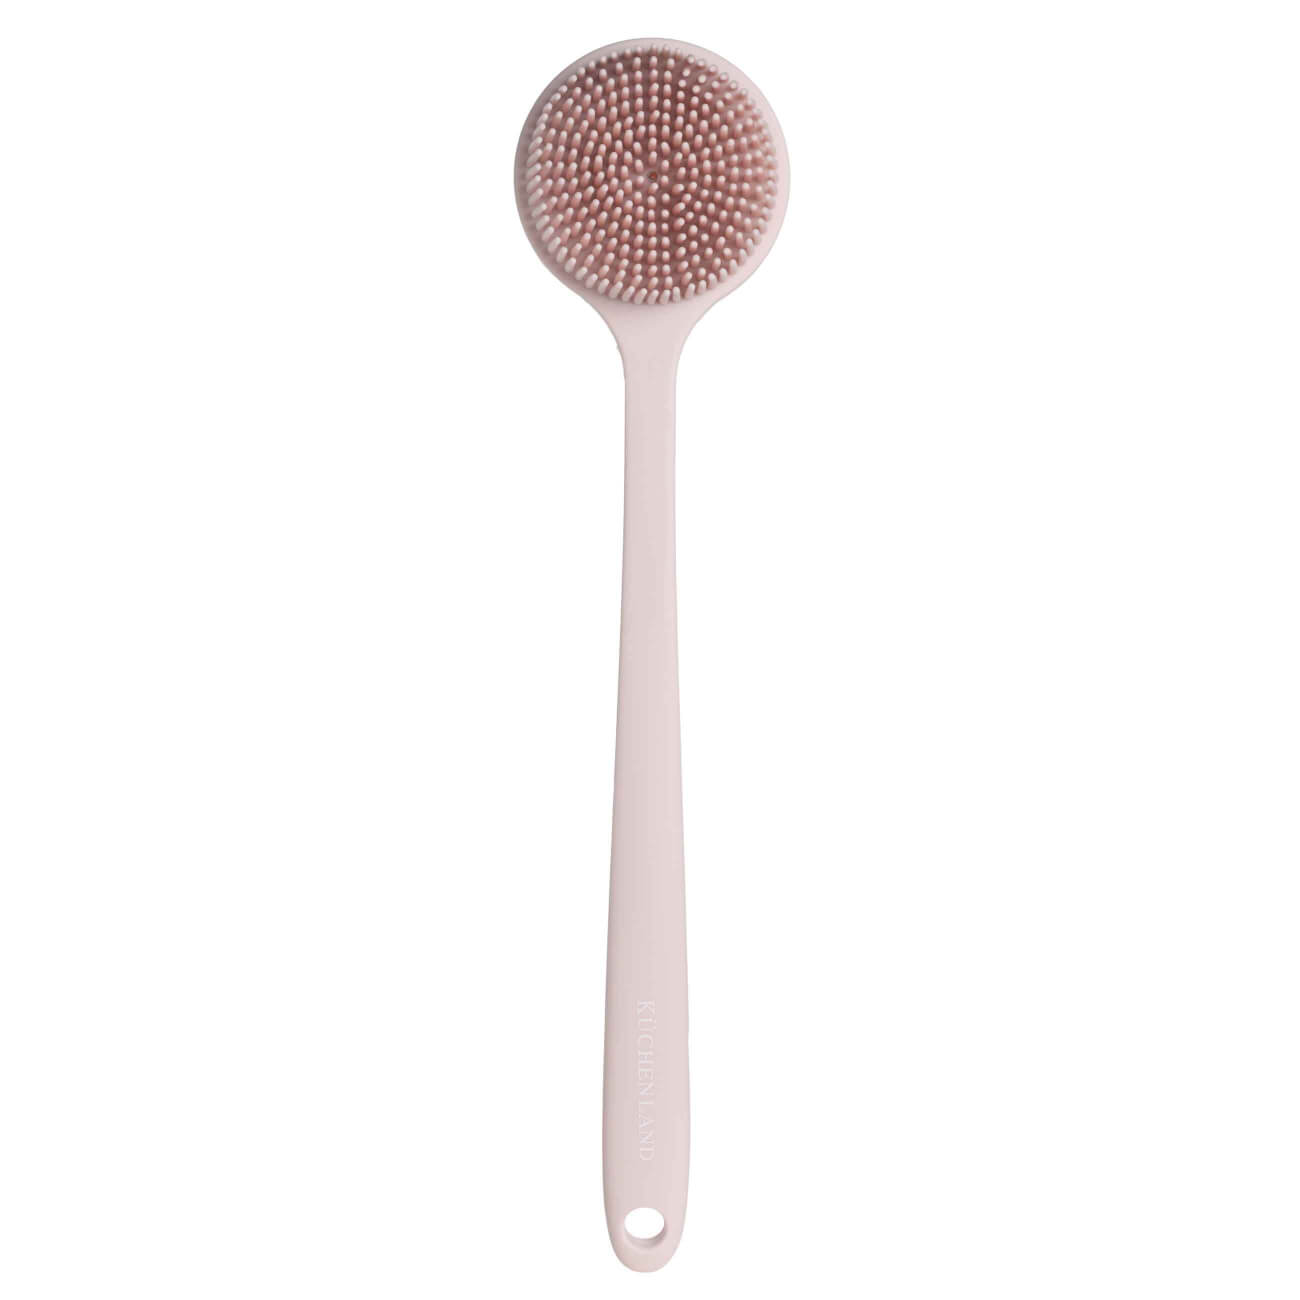 Щетка для мытья тела, 38 см, с ручкой, силикон, пудровая, Glamor щетка для мытья посуды roombroom